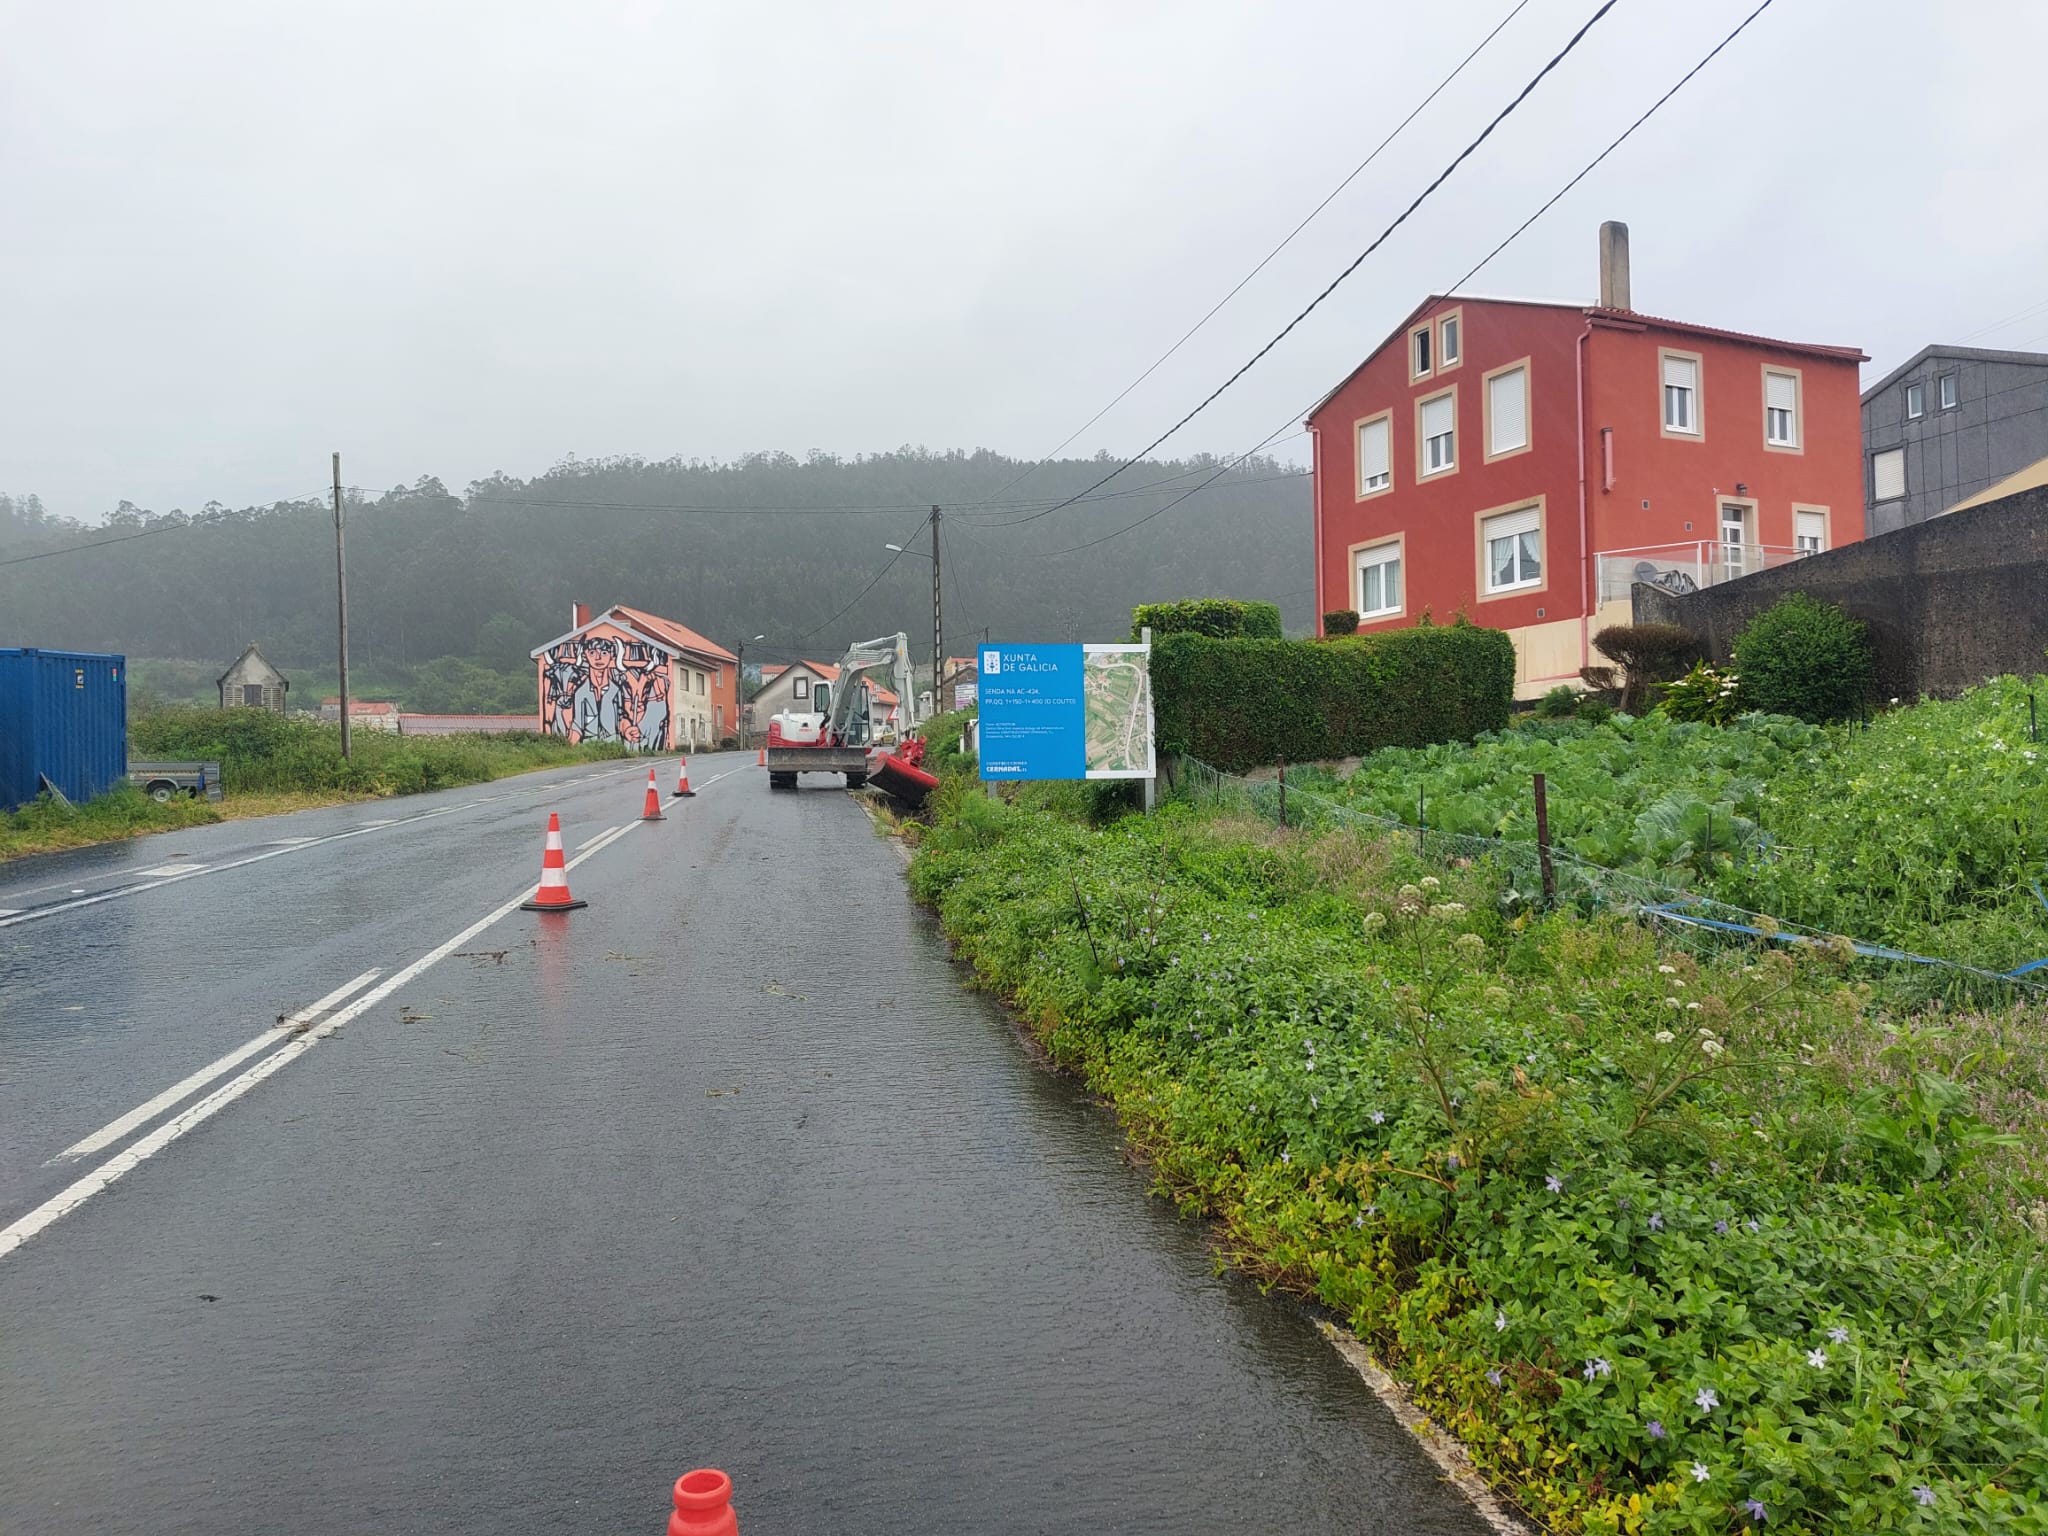 Image 0 of article A Xunta inicia as obras da nova senda na estrada AC-424 no Couto, no concello de Ponteceso, que suporán un investimento de 357.000 €